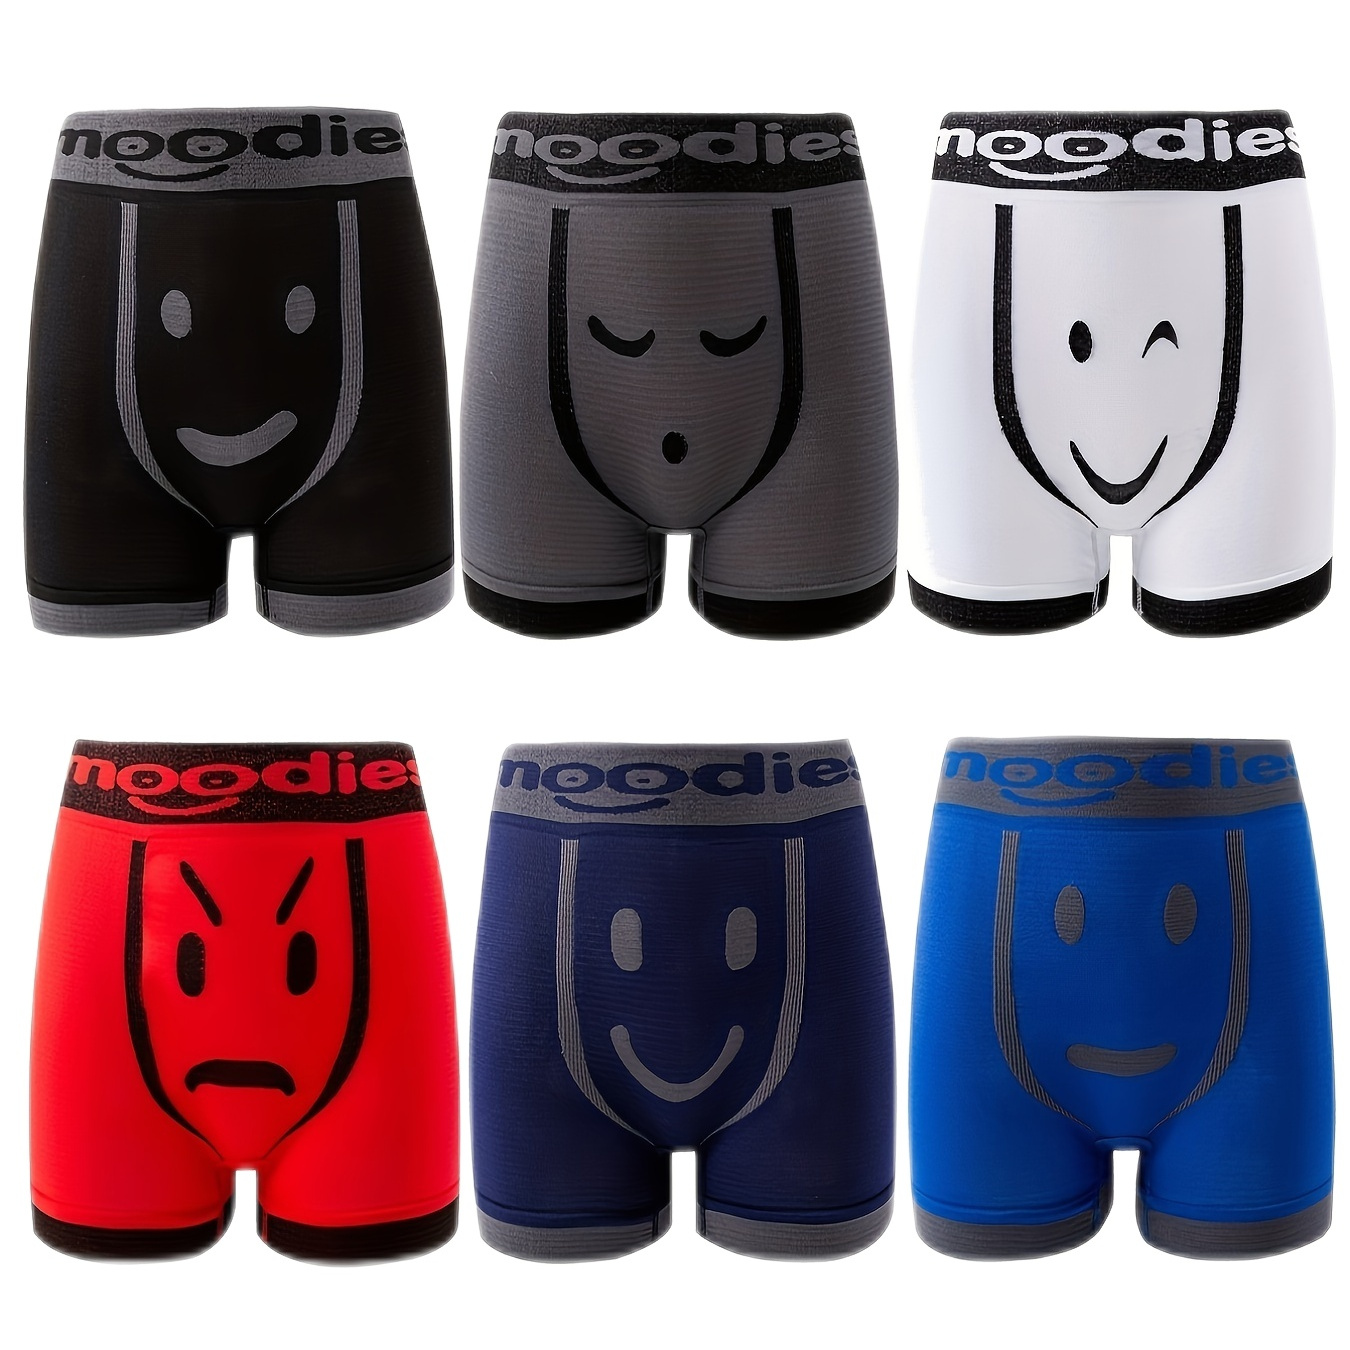 

6pcs/lot Fashion Cartoon Emoticons Men's Underwear Boxers Briefs, Casual Long Leg Boxer Shorts Panties Homme Underpants For Male, Random Color Delivery